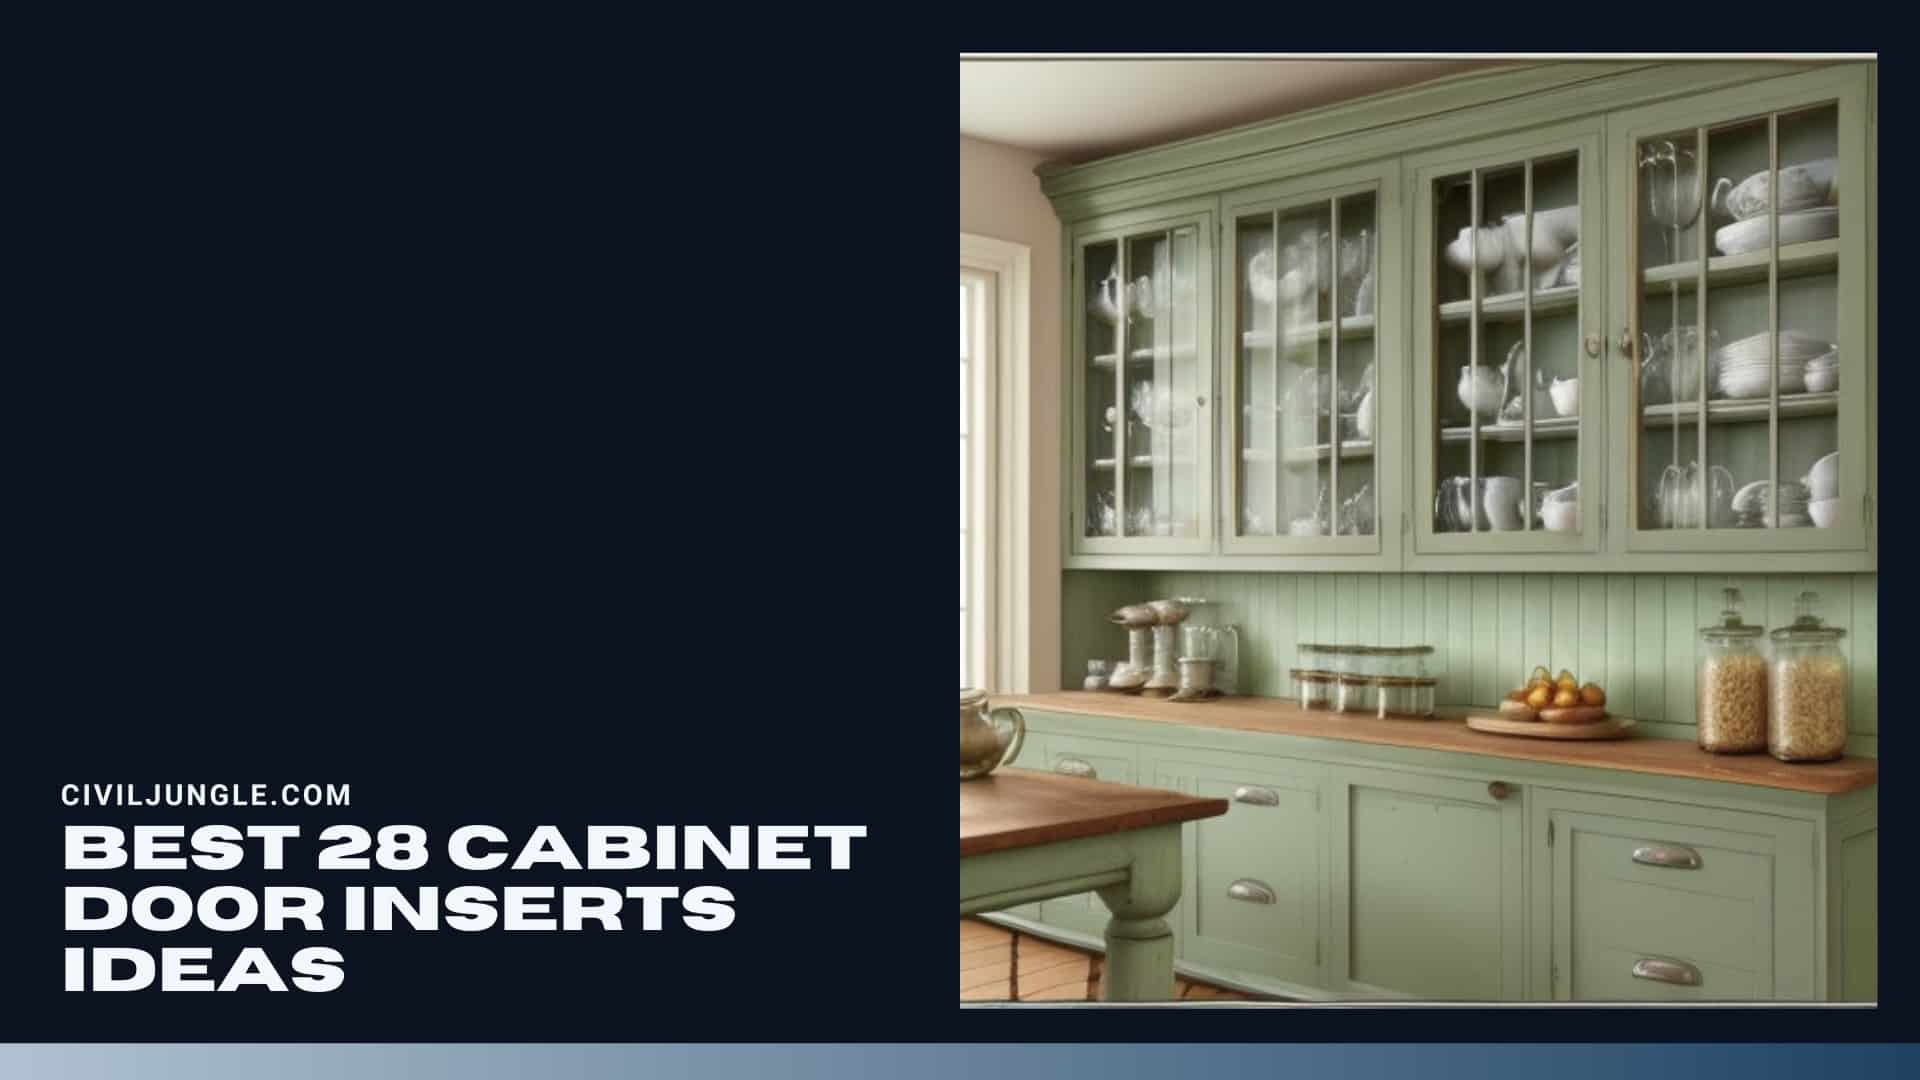 Best 28 Cabinet Door Inserts Ideas